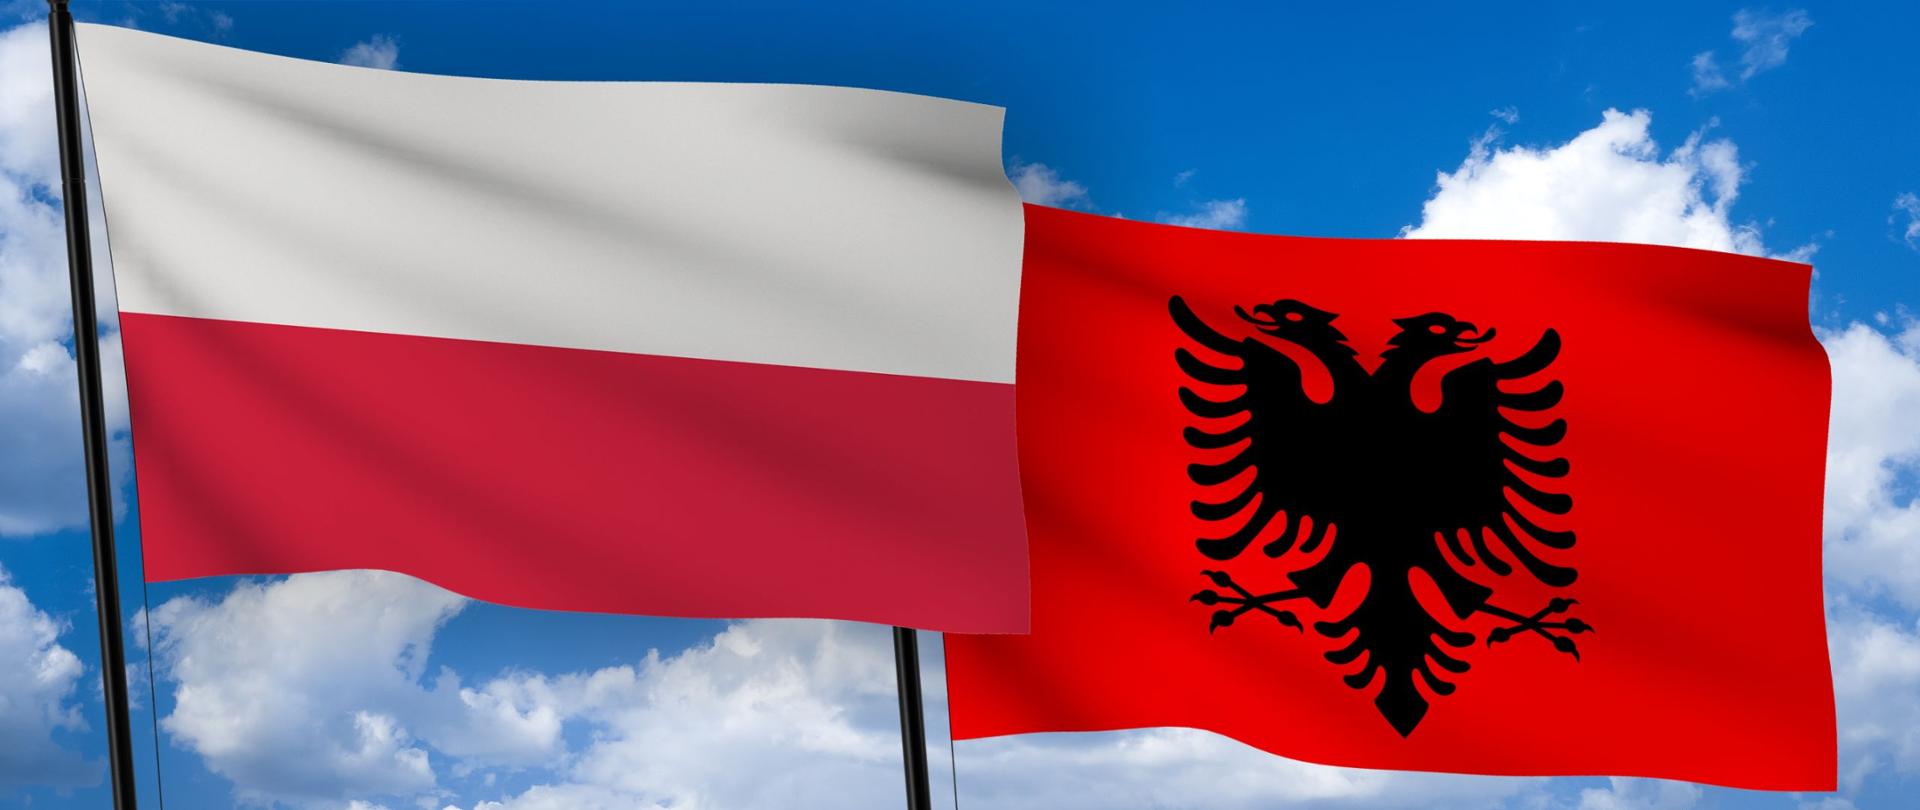 Po lewej stronie flaga Polski, po prawej flaga Albanii na tle nieba